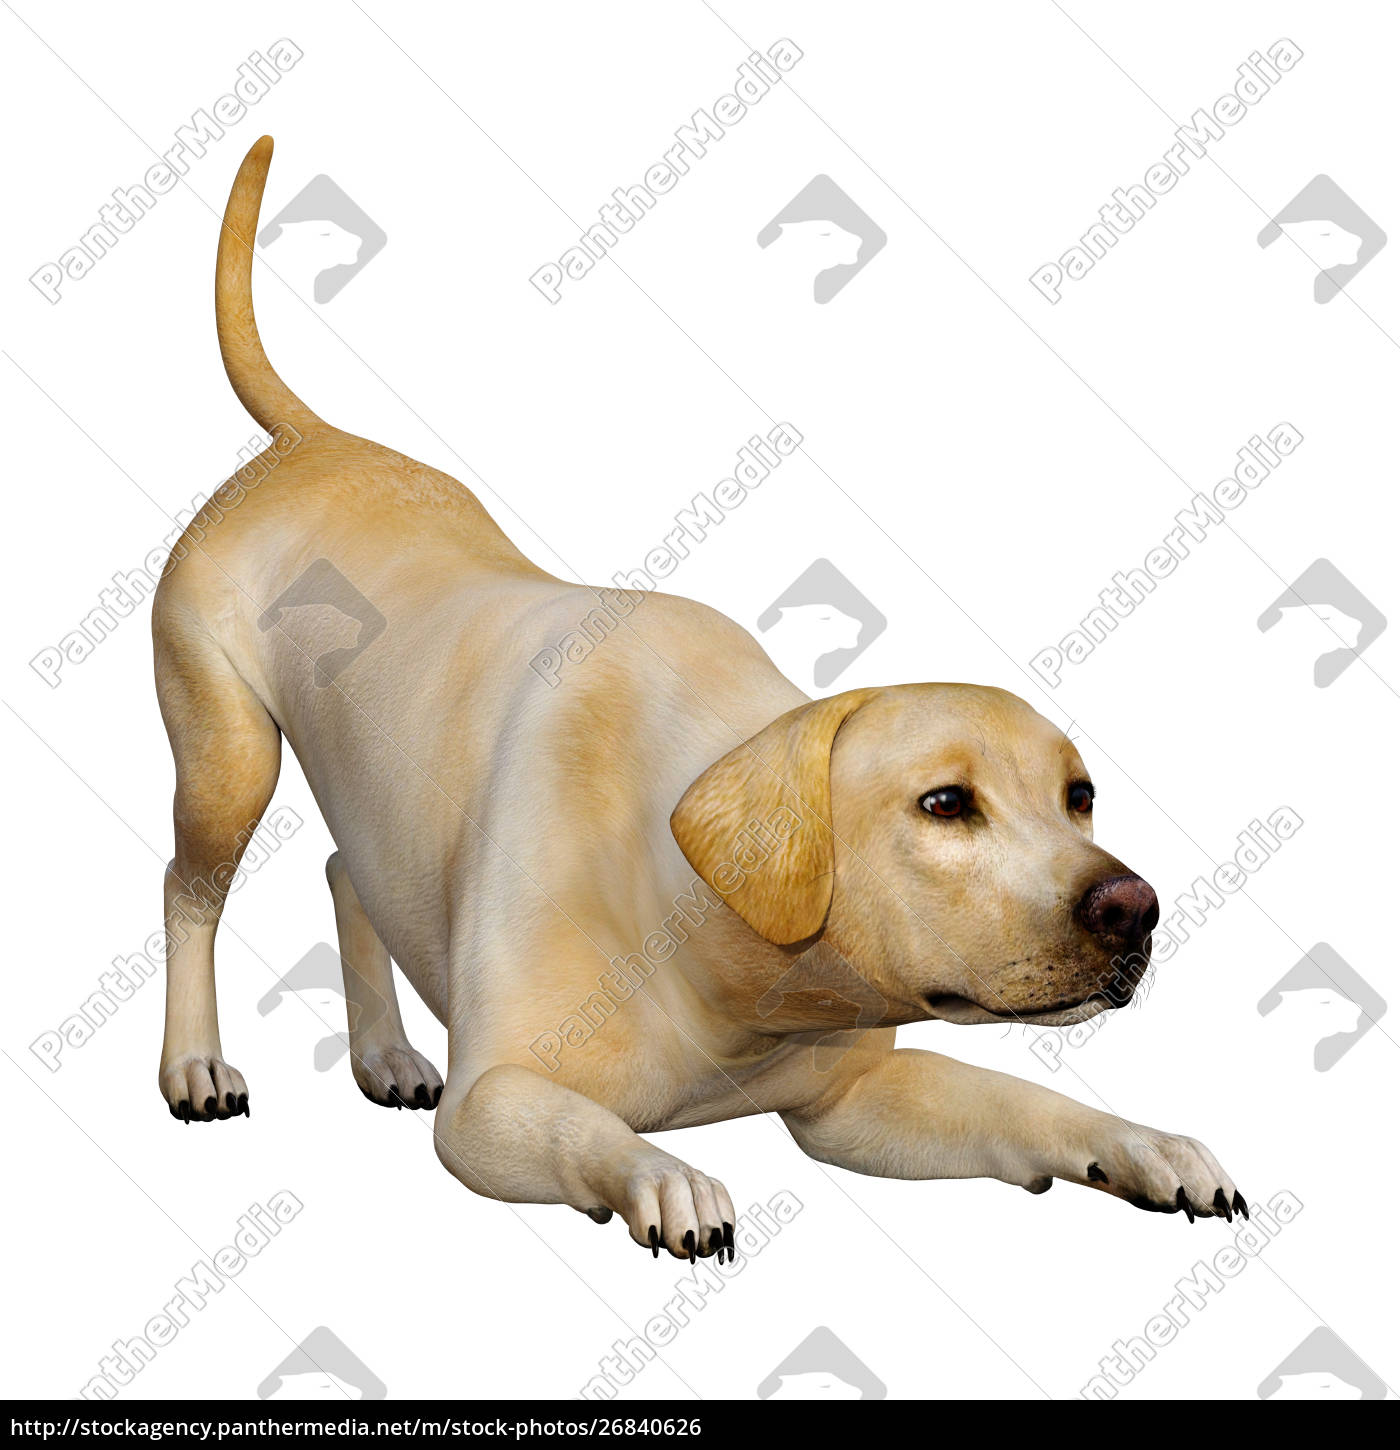 Literacy Kortfattet Morgenøvelser 3D rendering Labrador hund på hvid - Stockphoto #26840626 | PantherMedia  Billedbureau